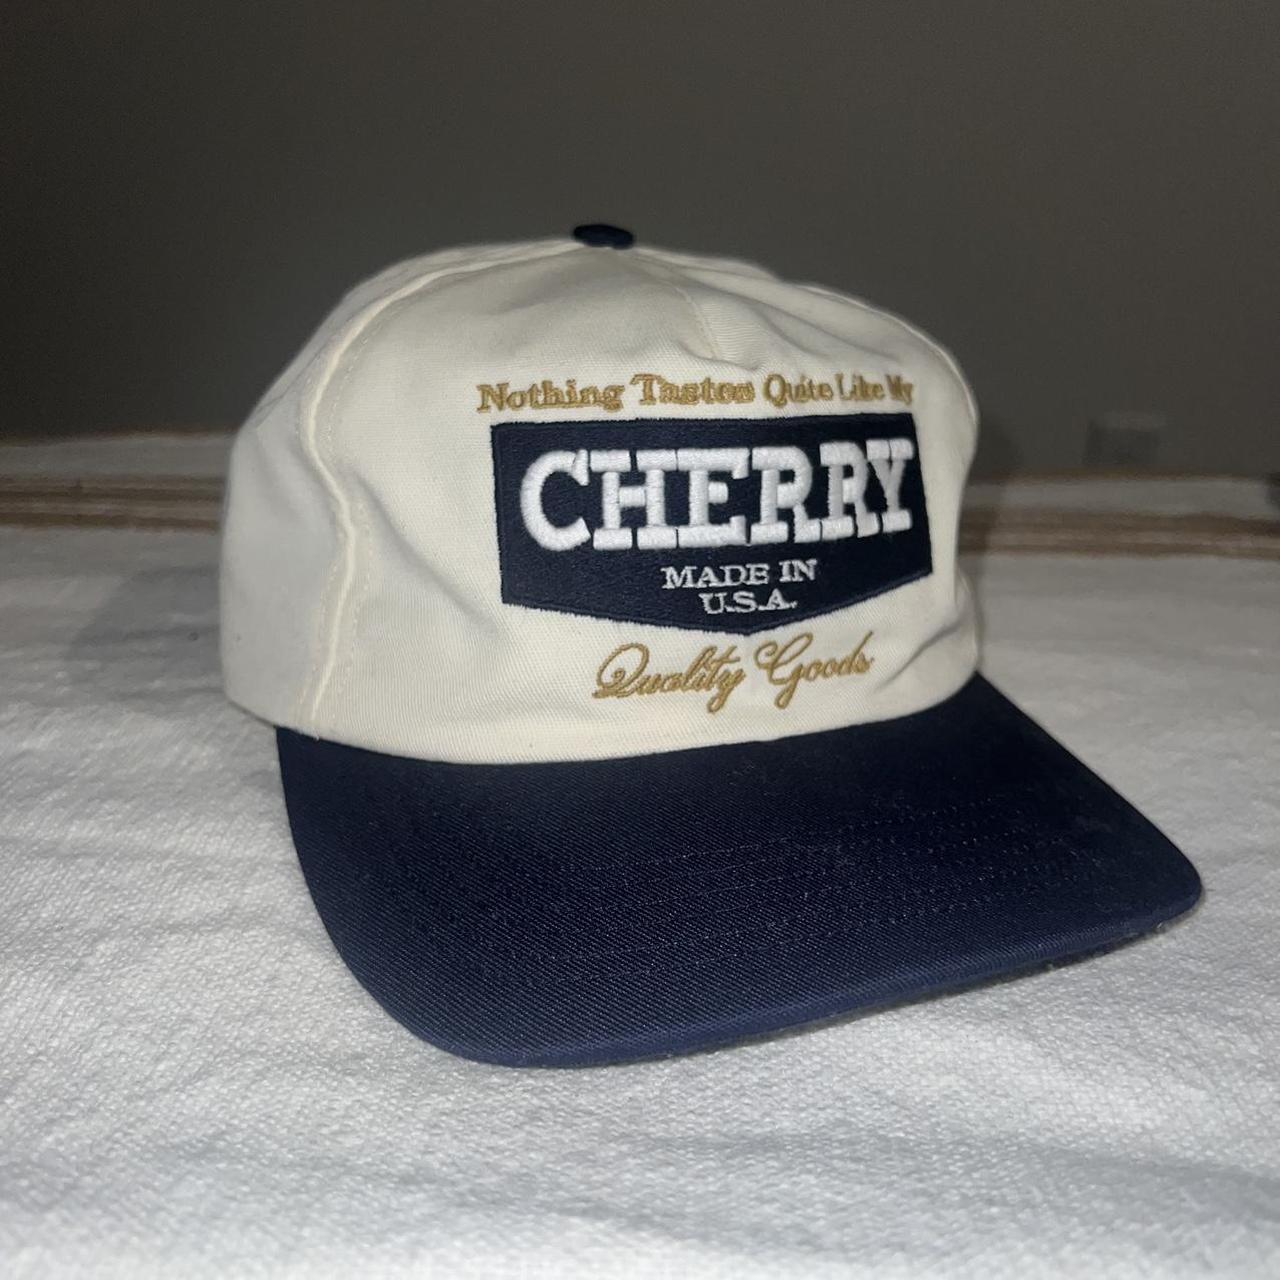 Cherry LA hat Amazing piece, sold out on Cherry LA... - Depop